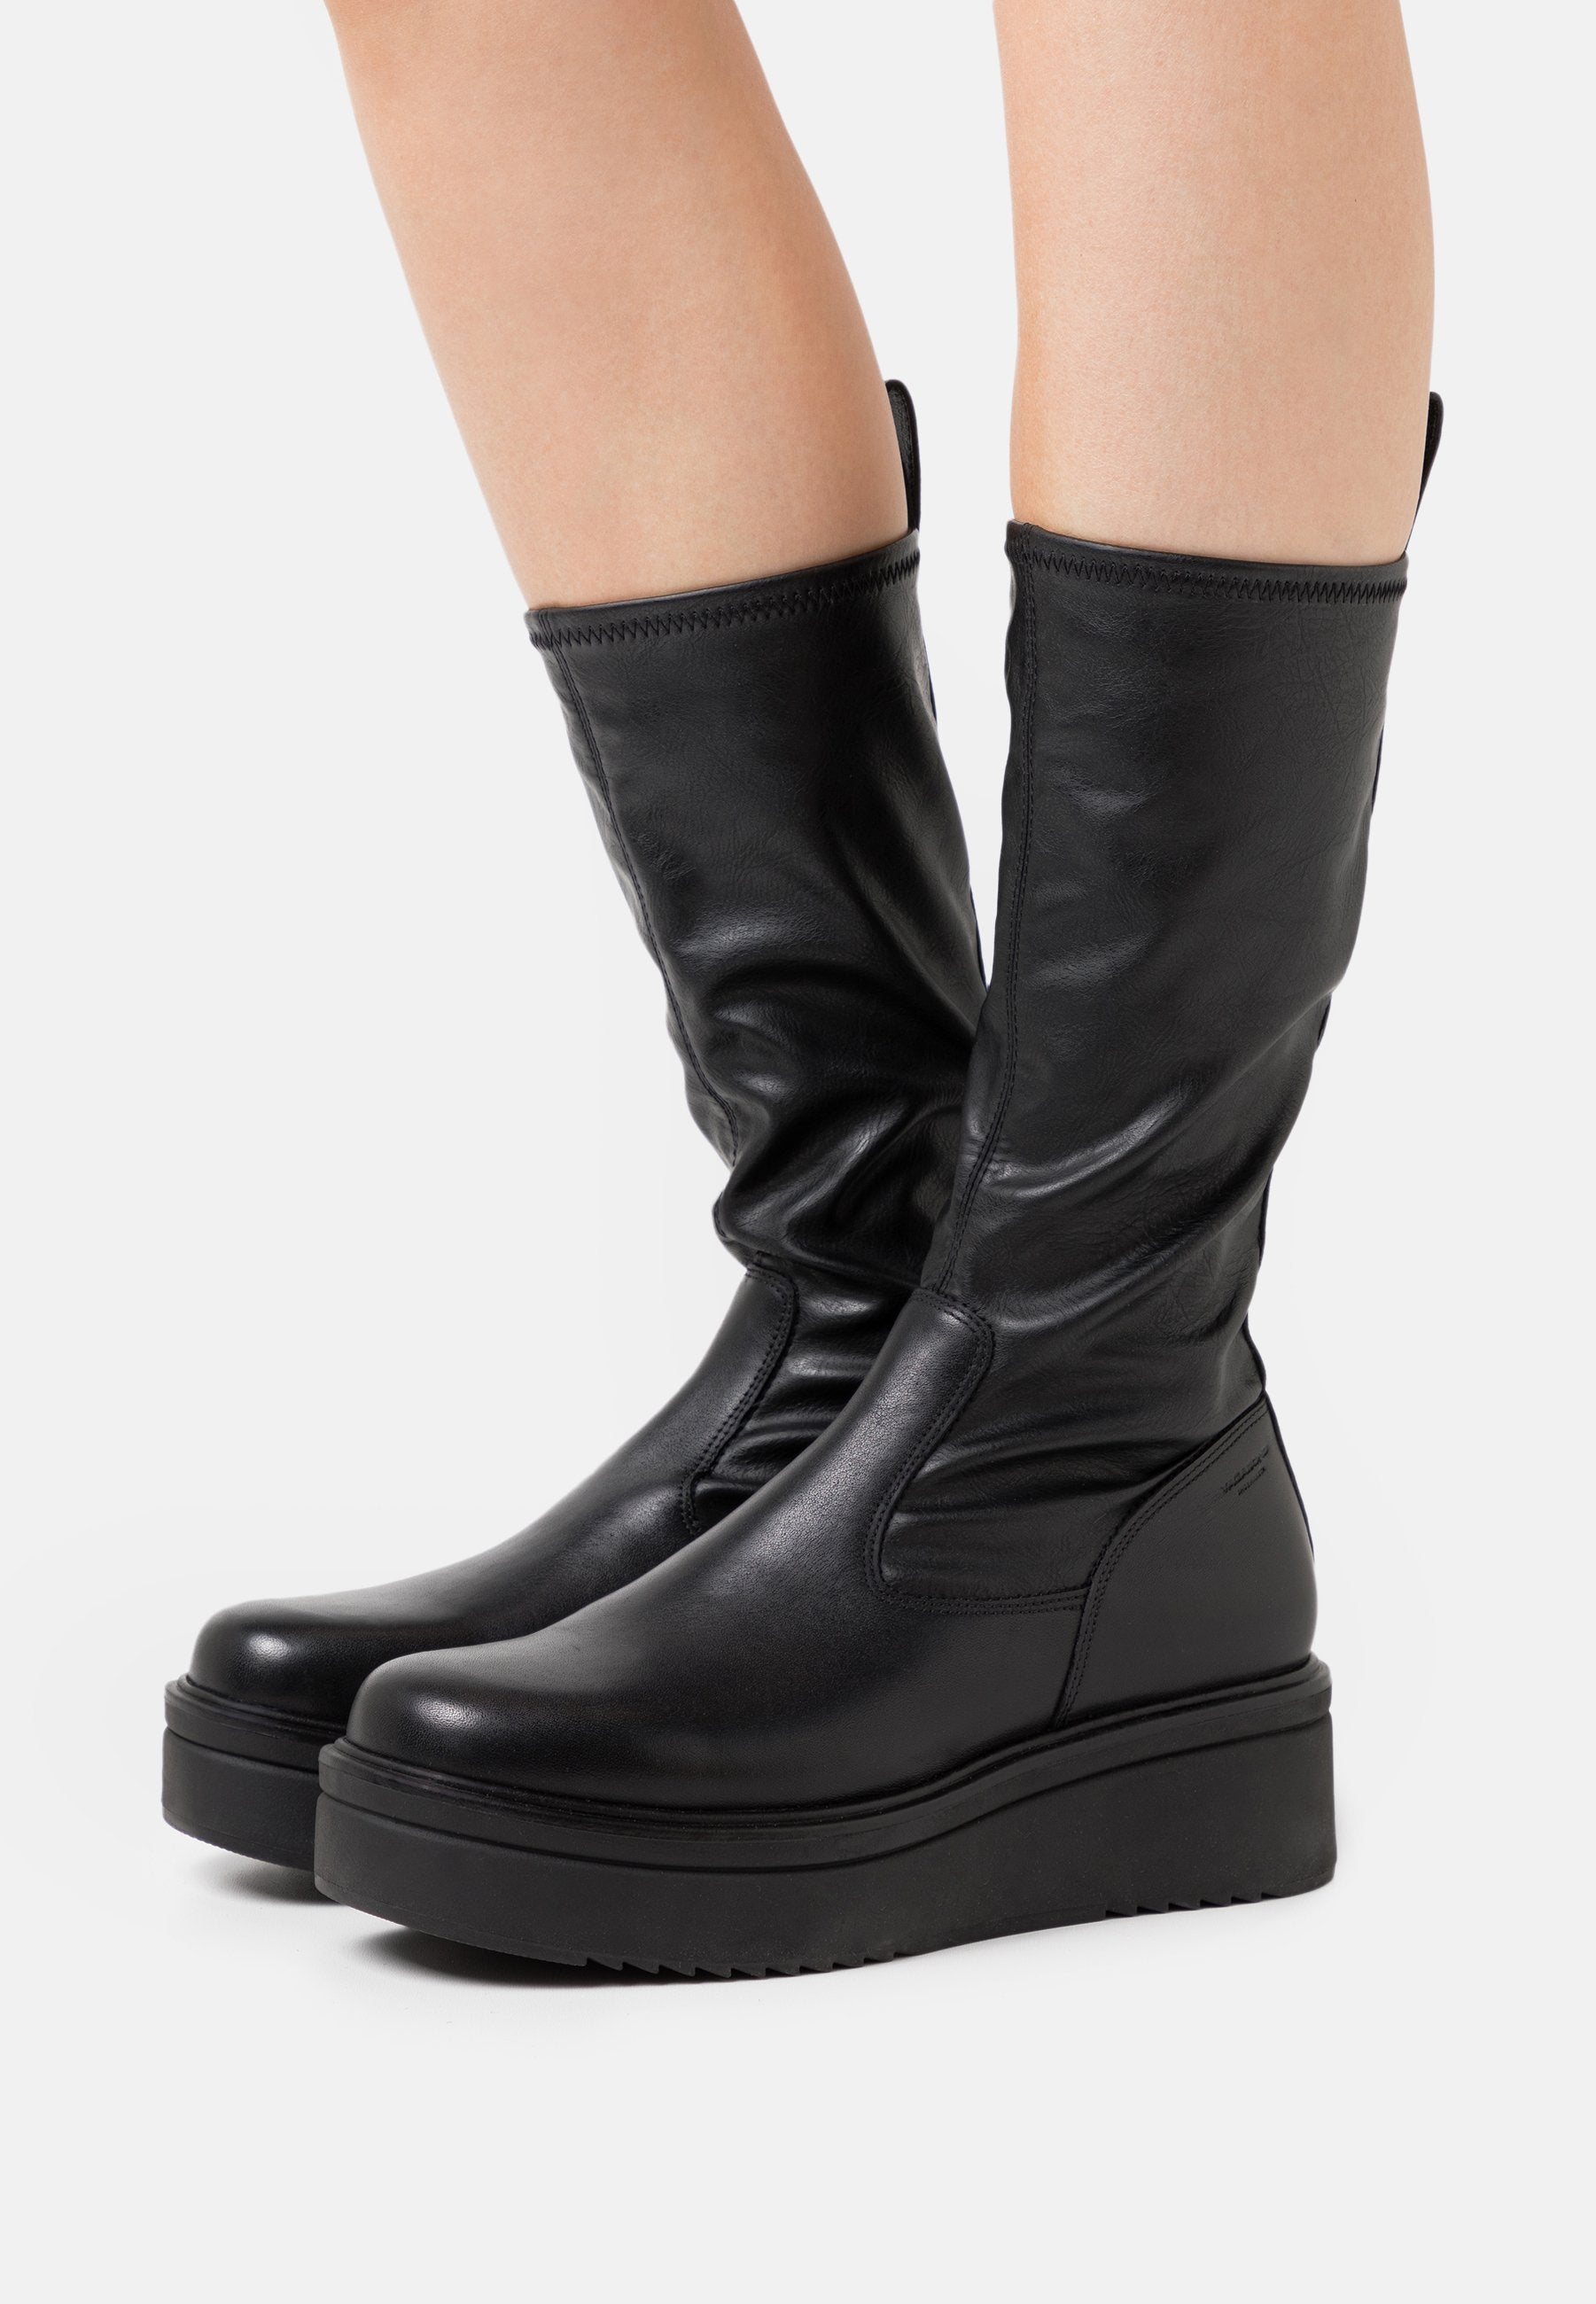 Vagabond Tara Boots - Flatform Boots - Genuine Leather Boots - Lulus